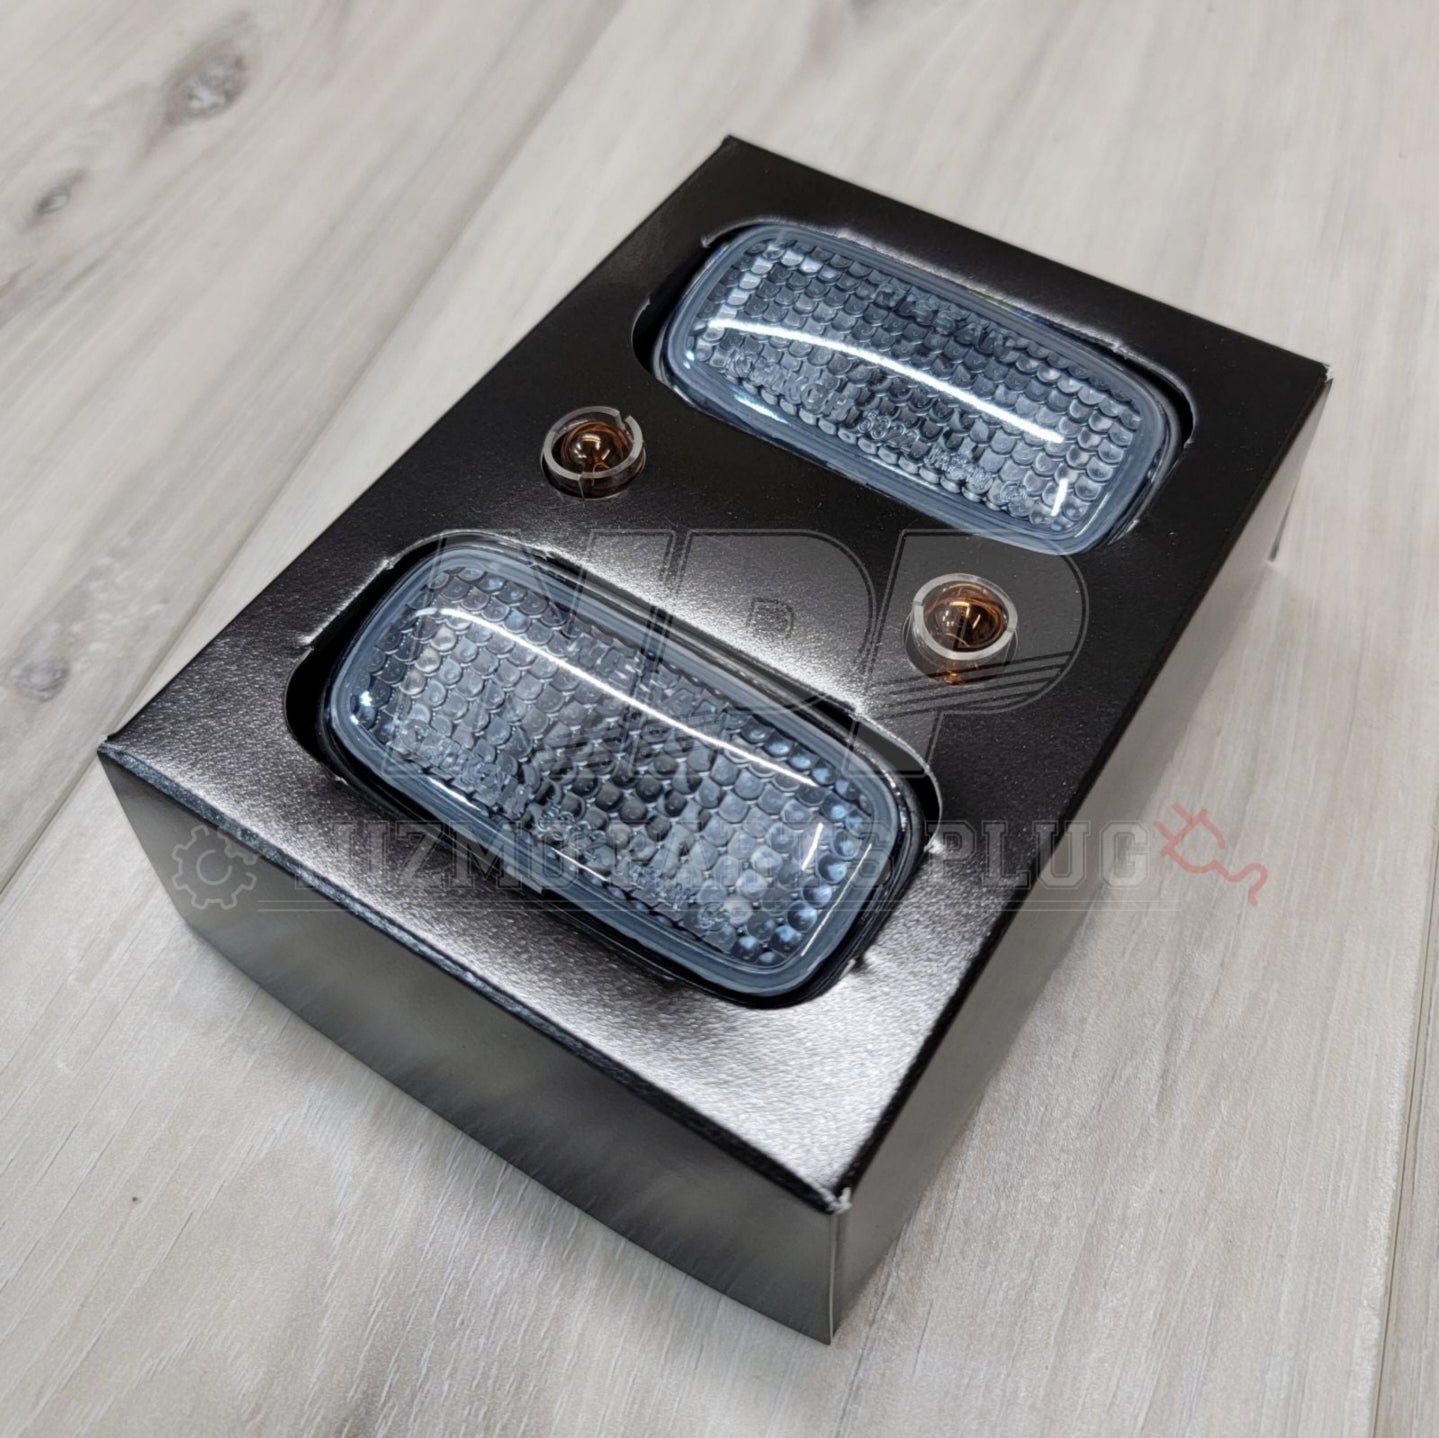 S15/R34 GTR Nismo Smoked Corner Light Kit